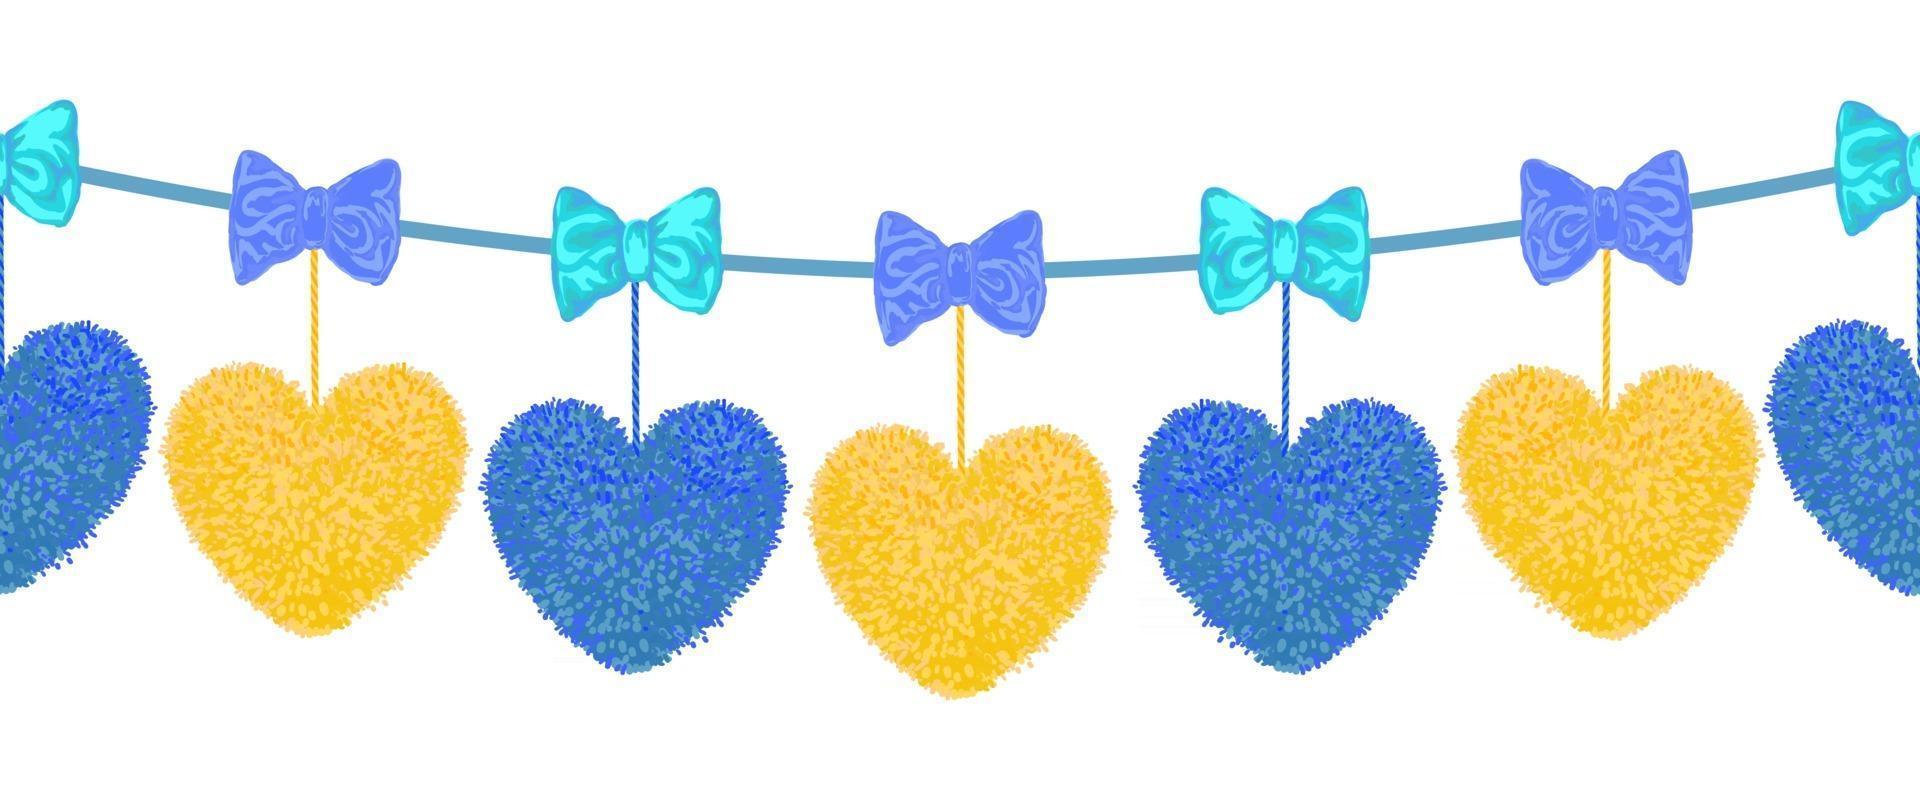 Vektor bunte nahtlose Muster des dekorativen Elements mit Pompons Herzen hängen an den Seilen und Bögen als Girlande isoliert auf weißem Hintergrund. Dekor für Valentinstag oder Babyparty-Design.